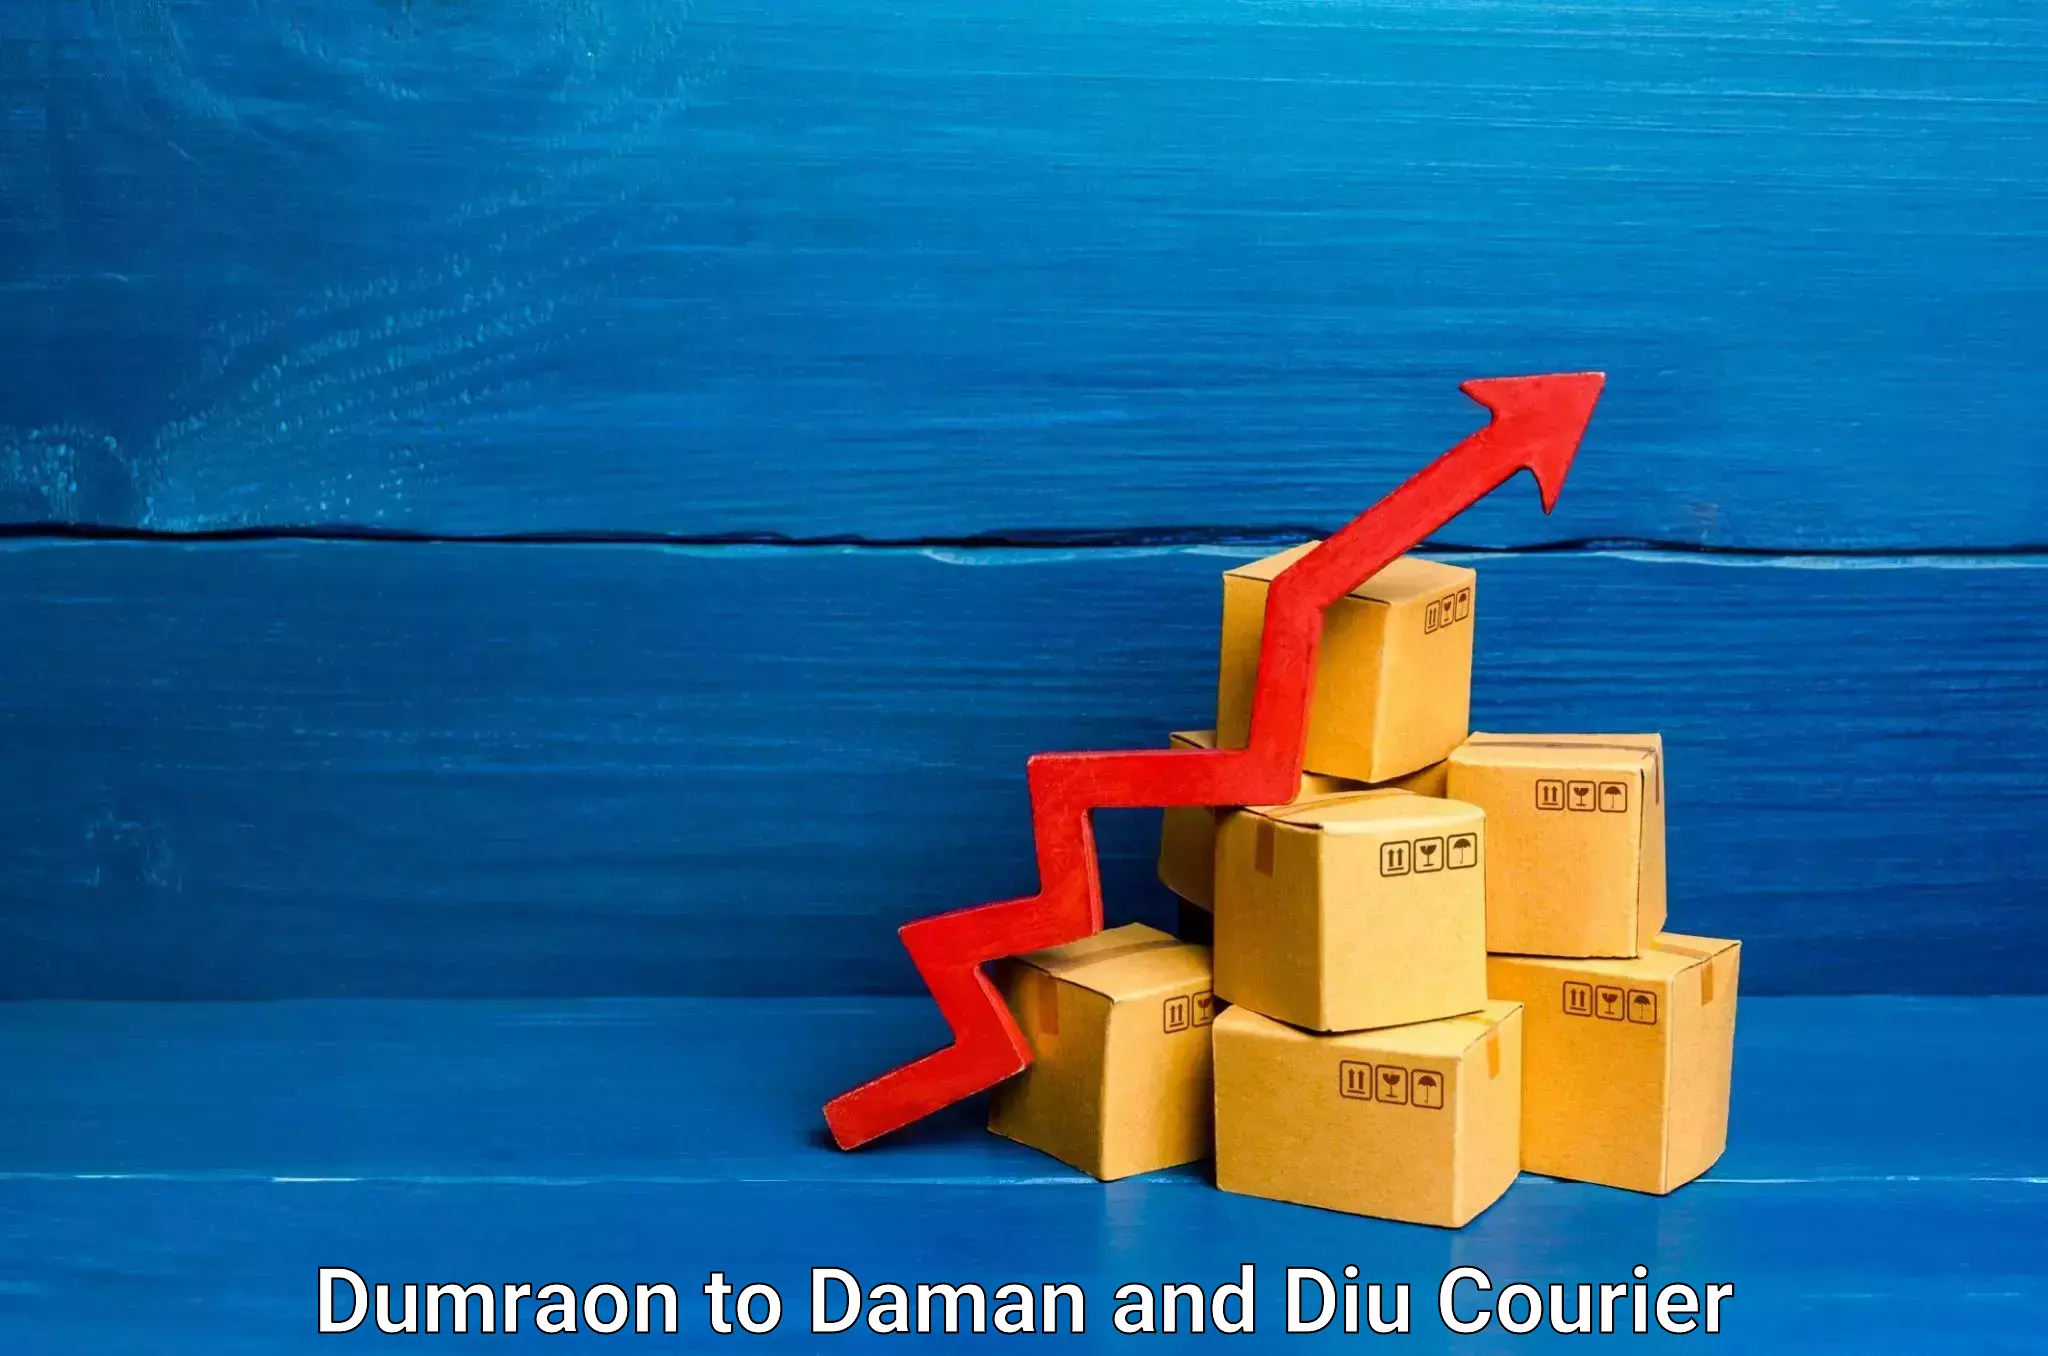 Home shifting experts Dumraon to Daman and Diu